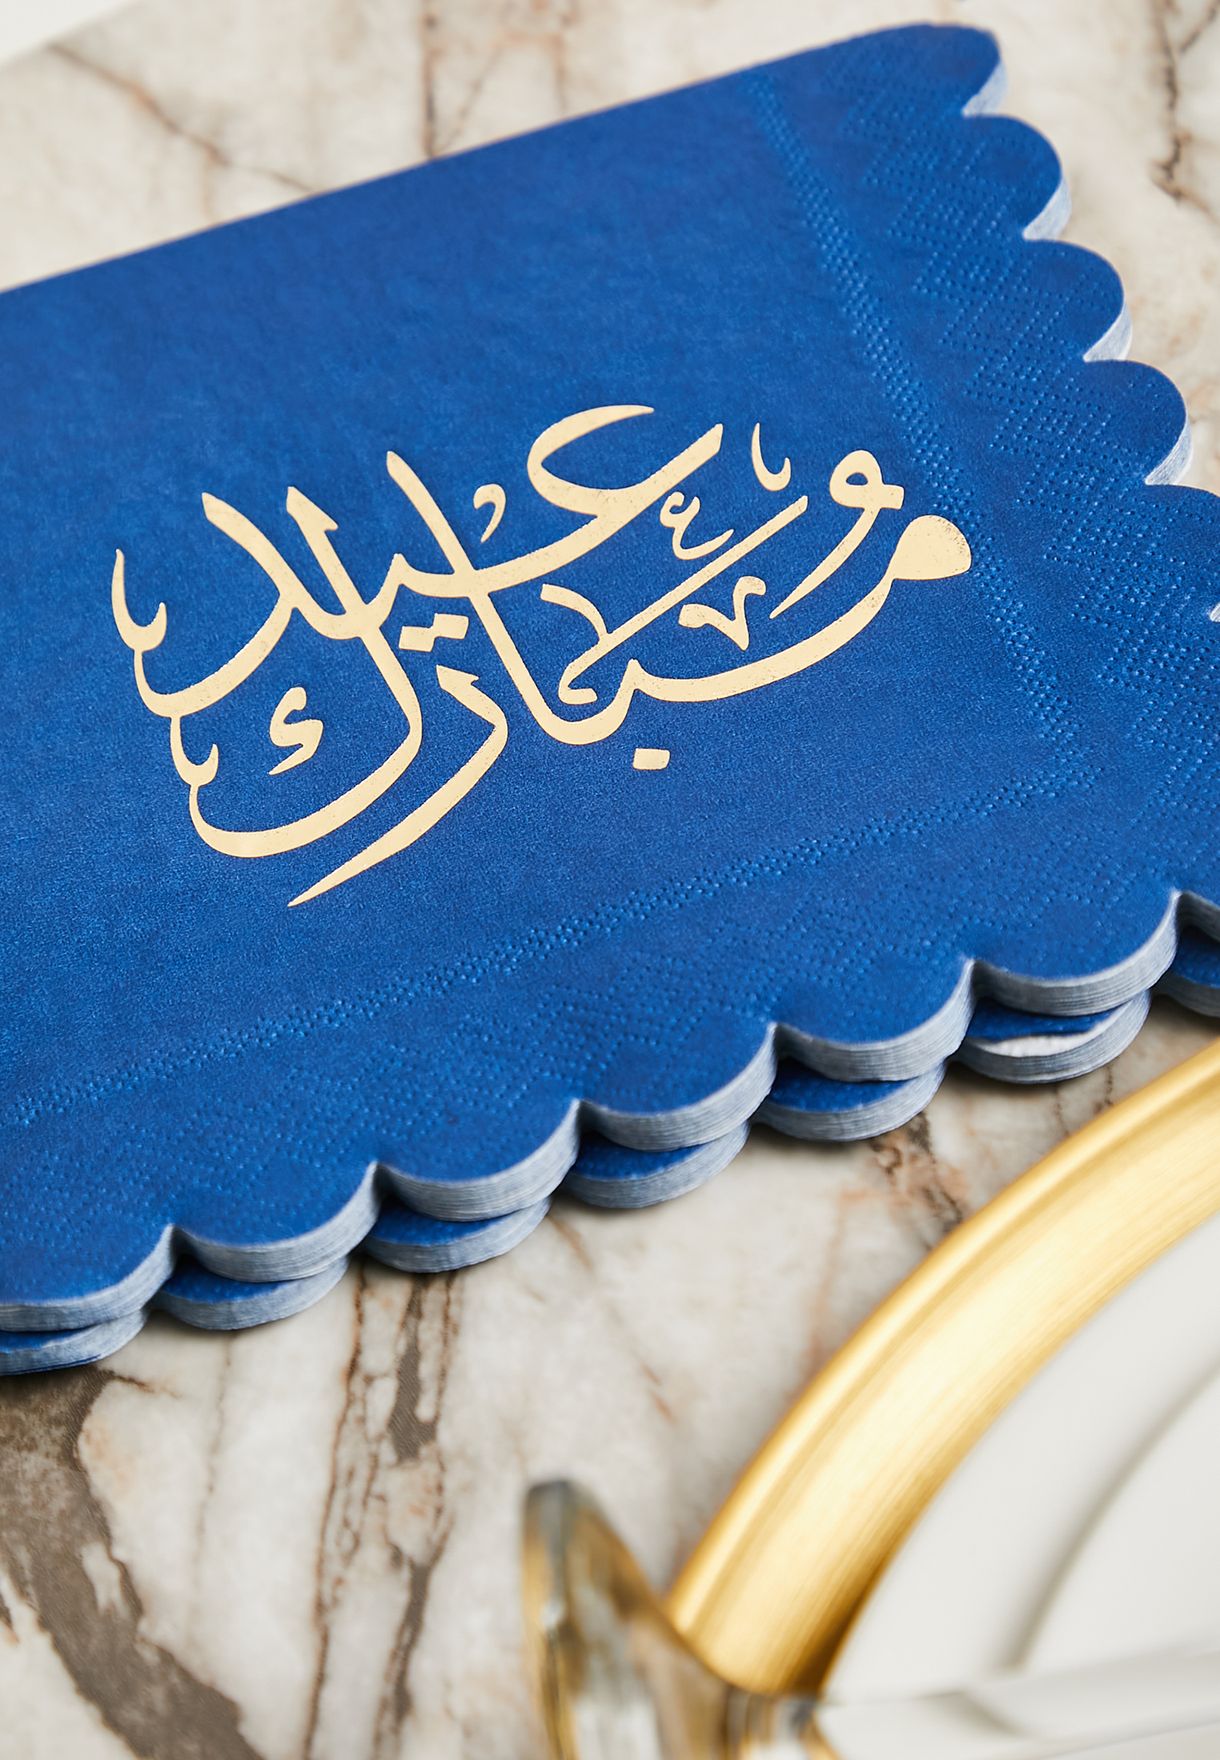 مجموعة 16 منديل مزينة بكتابة عيد مبارك